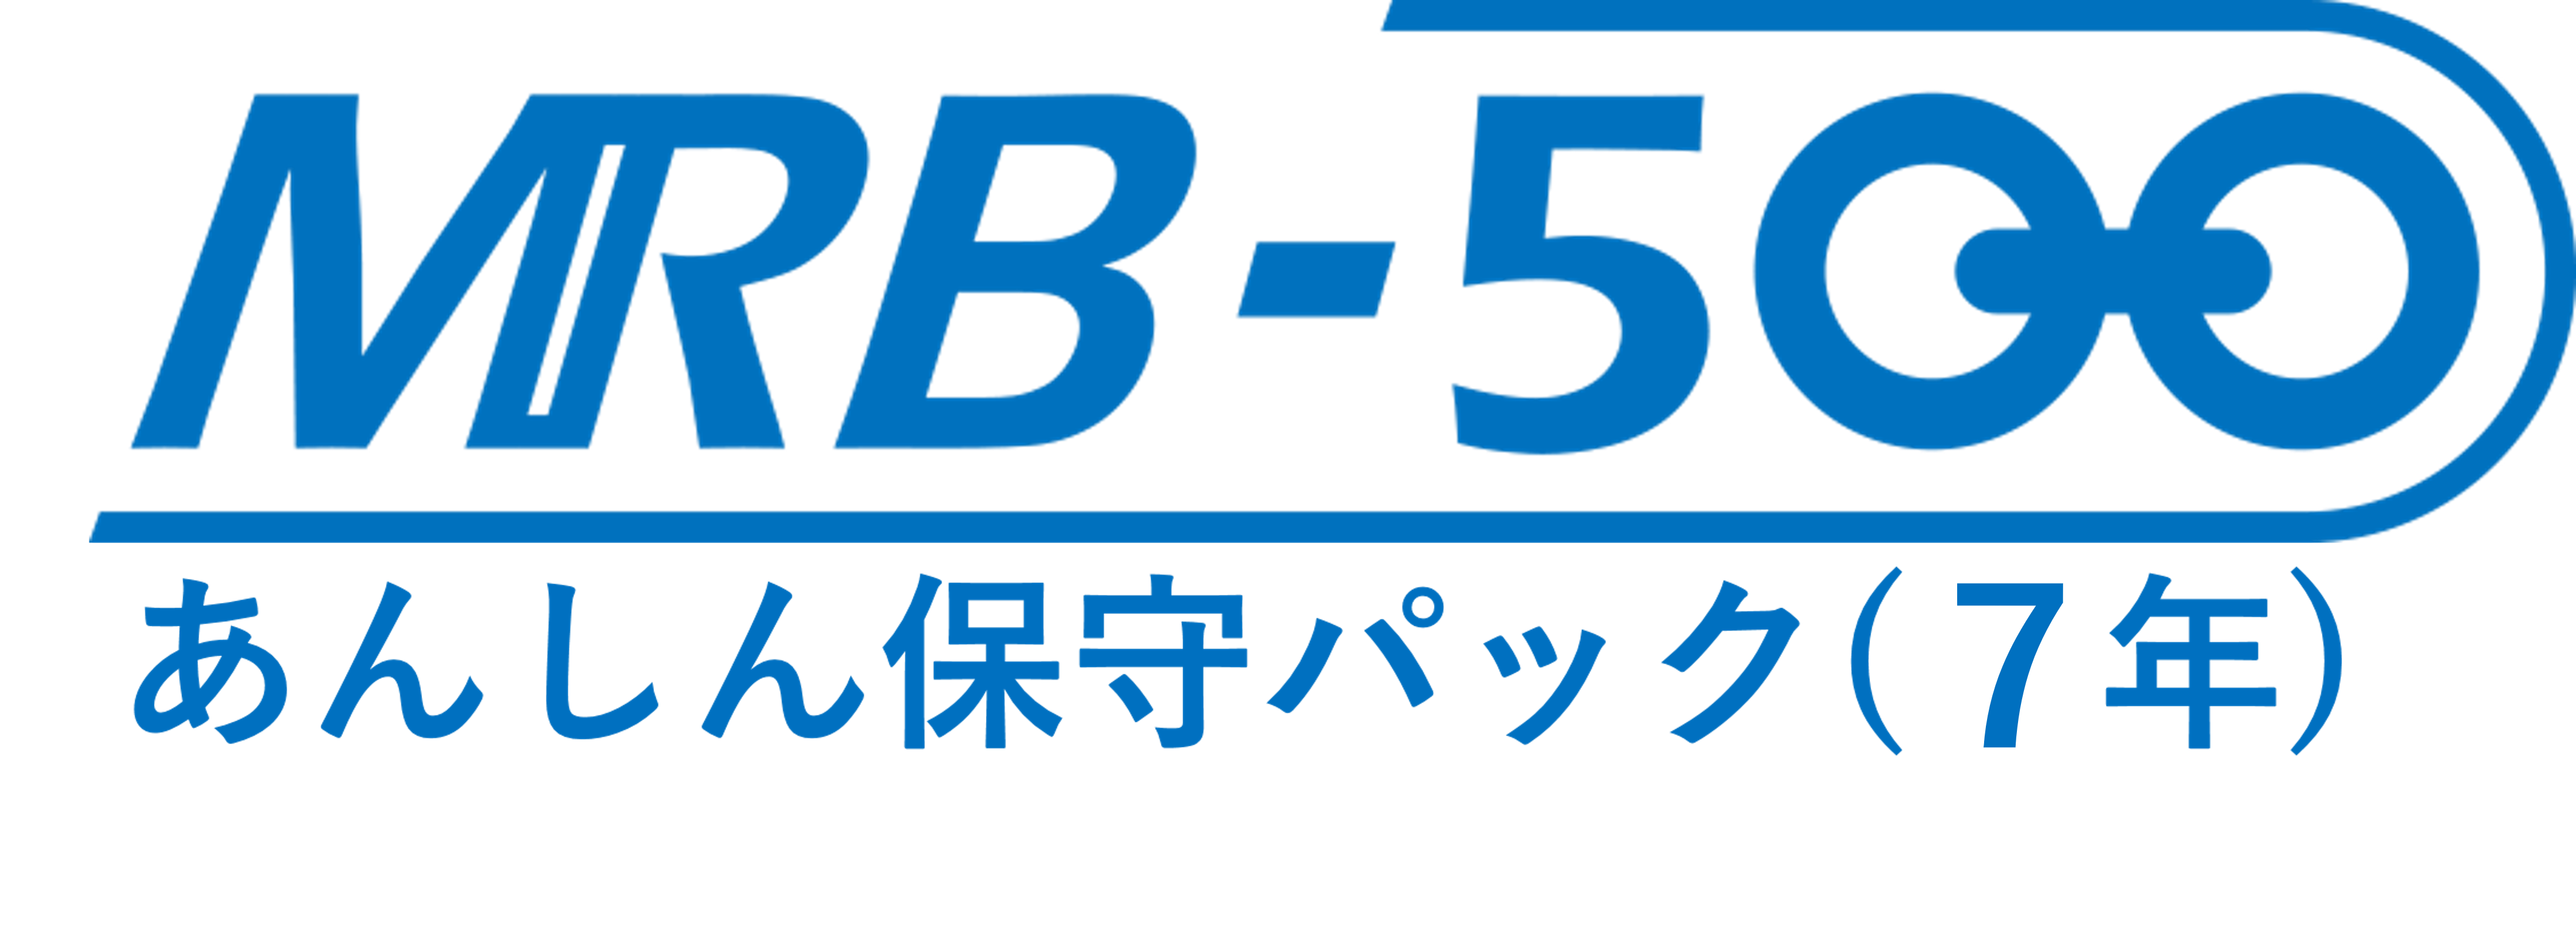 MRB-500あんしん保守パック(7年間)